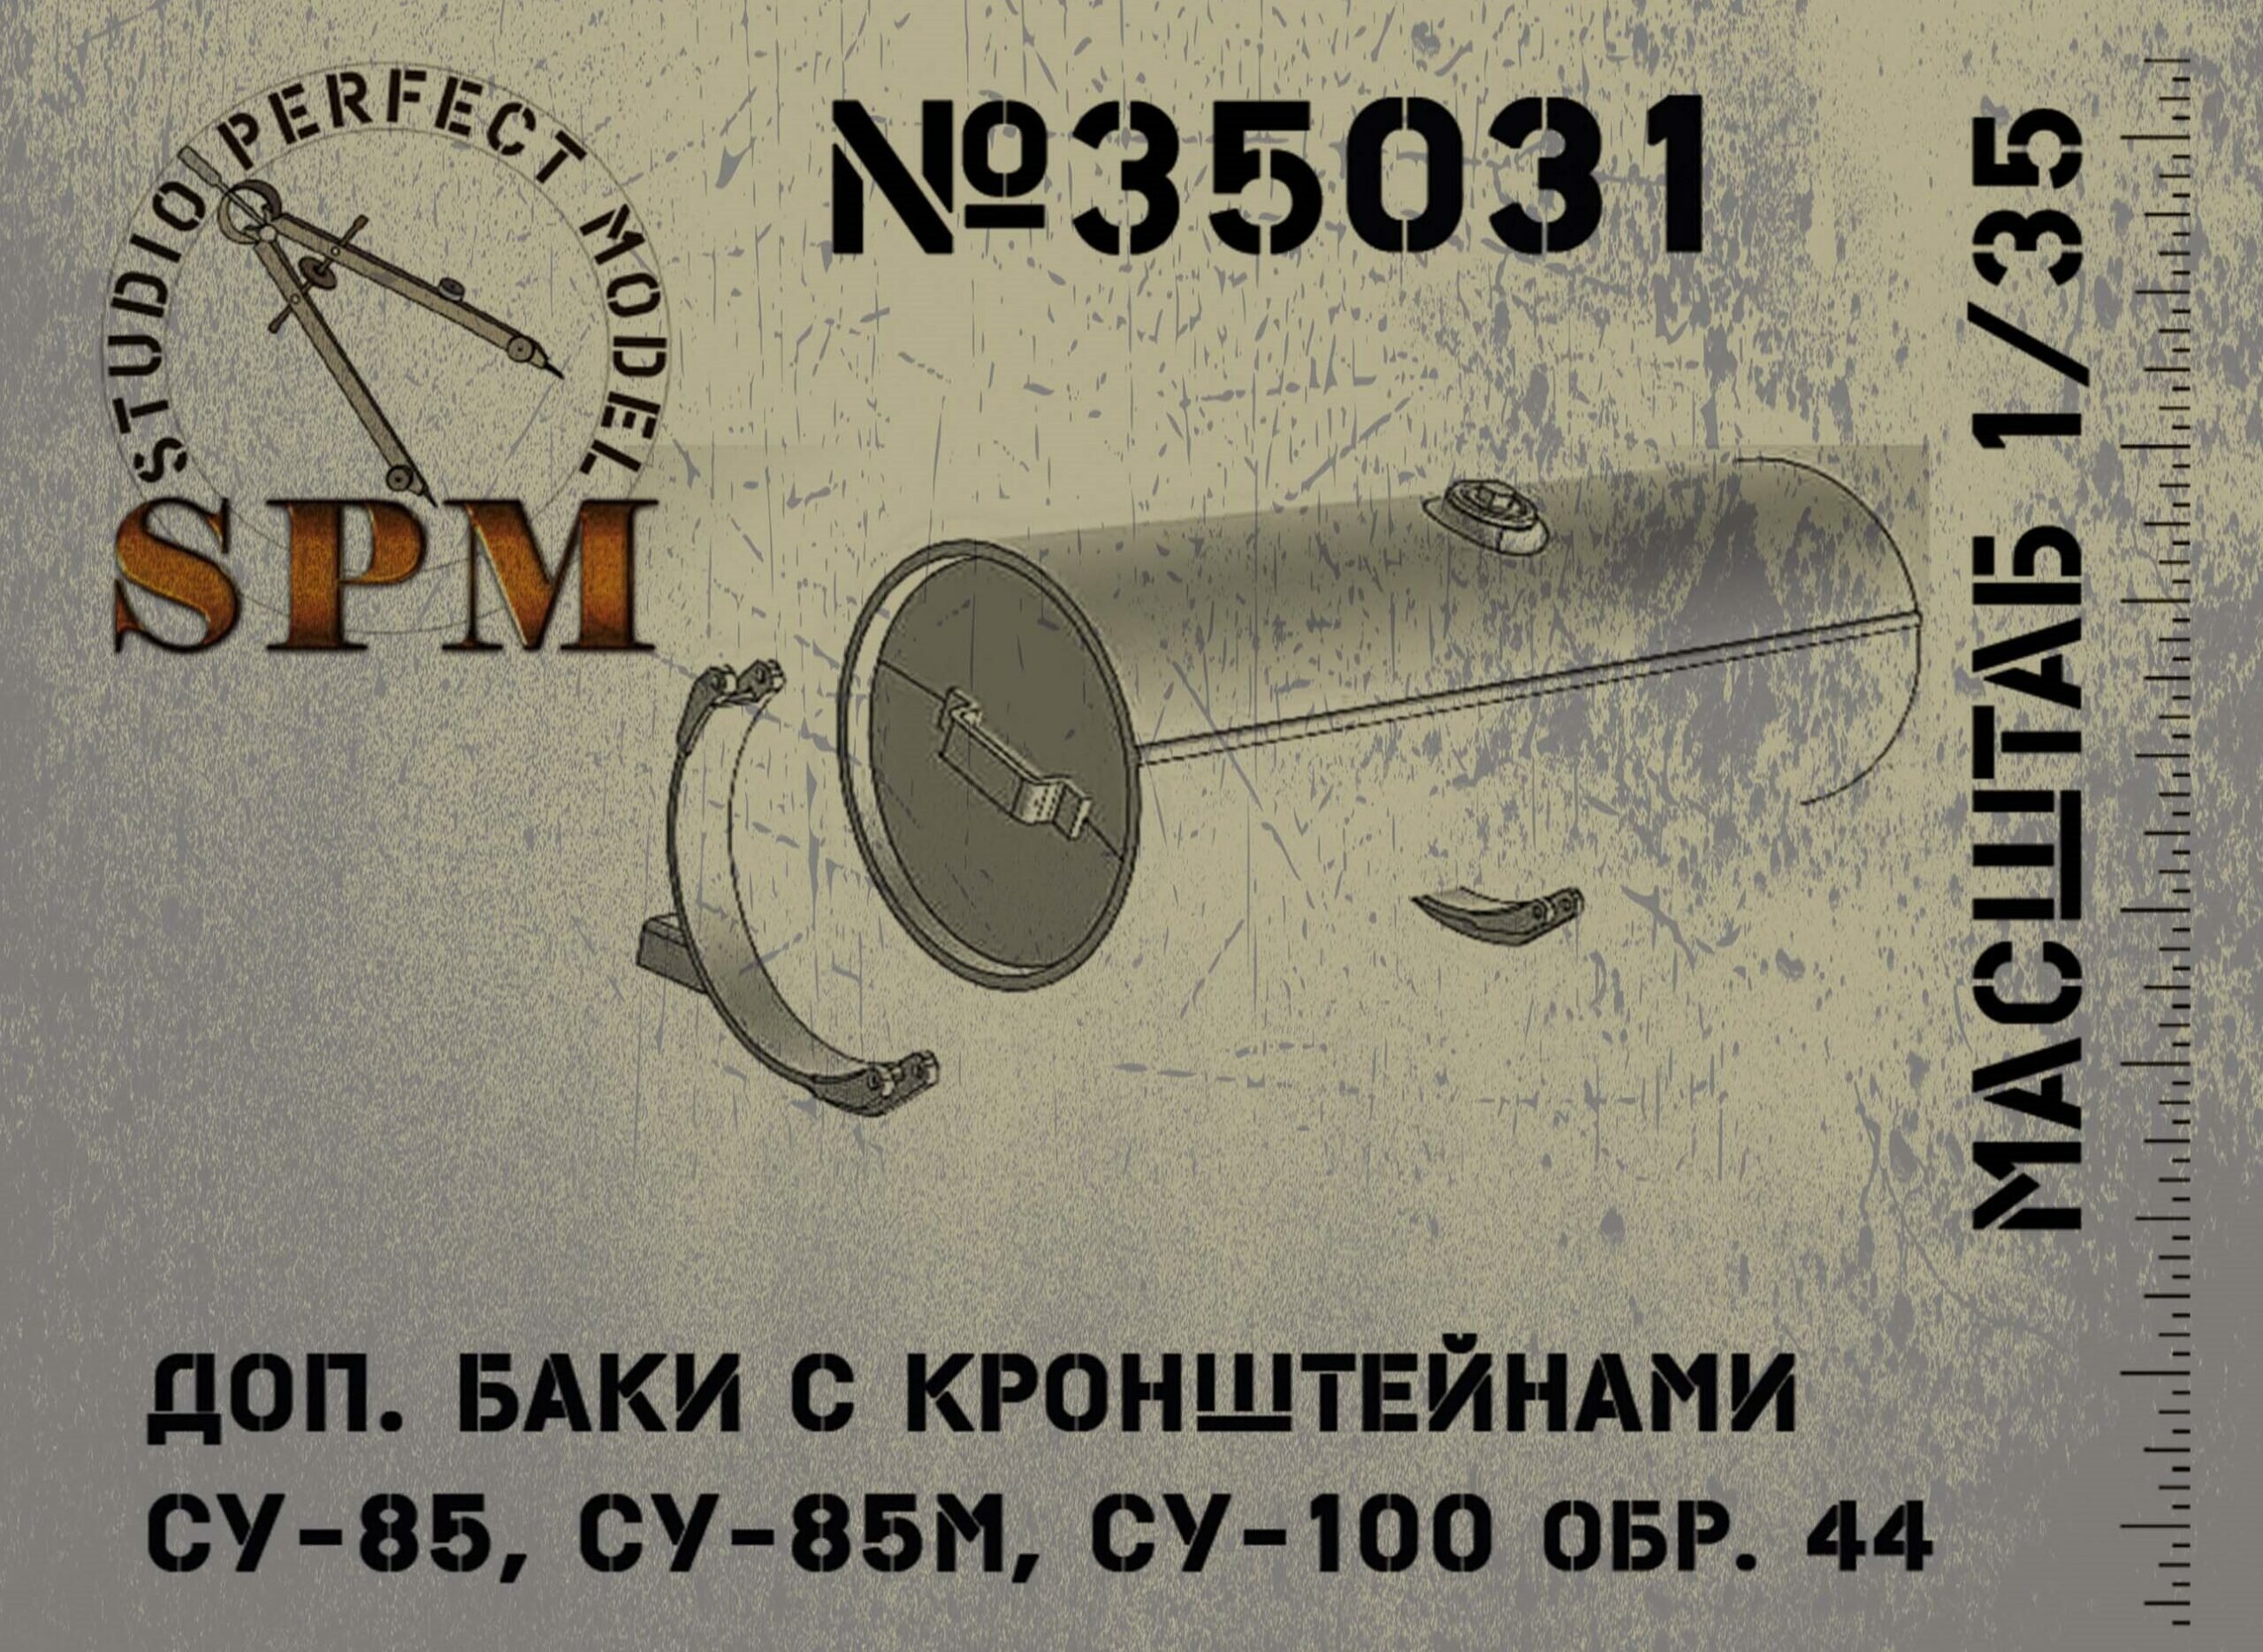 SPM35031 дополнительные баки с кронштейнами для СУ-85, 85м и СУ-100 до января 45г